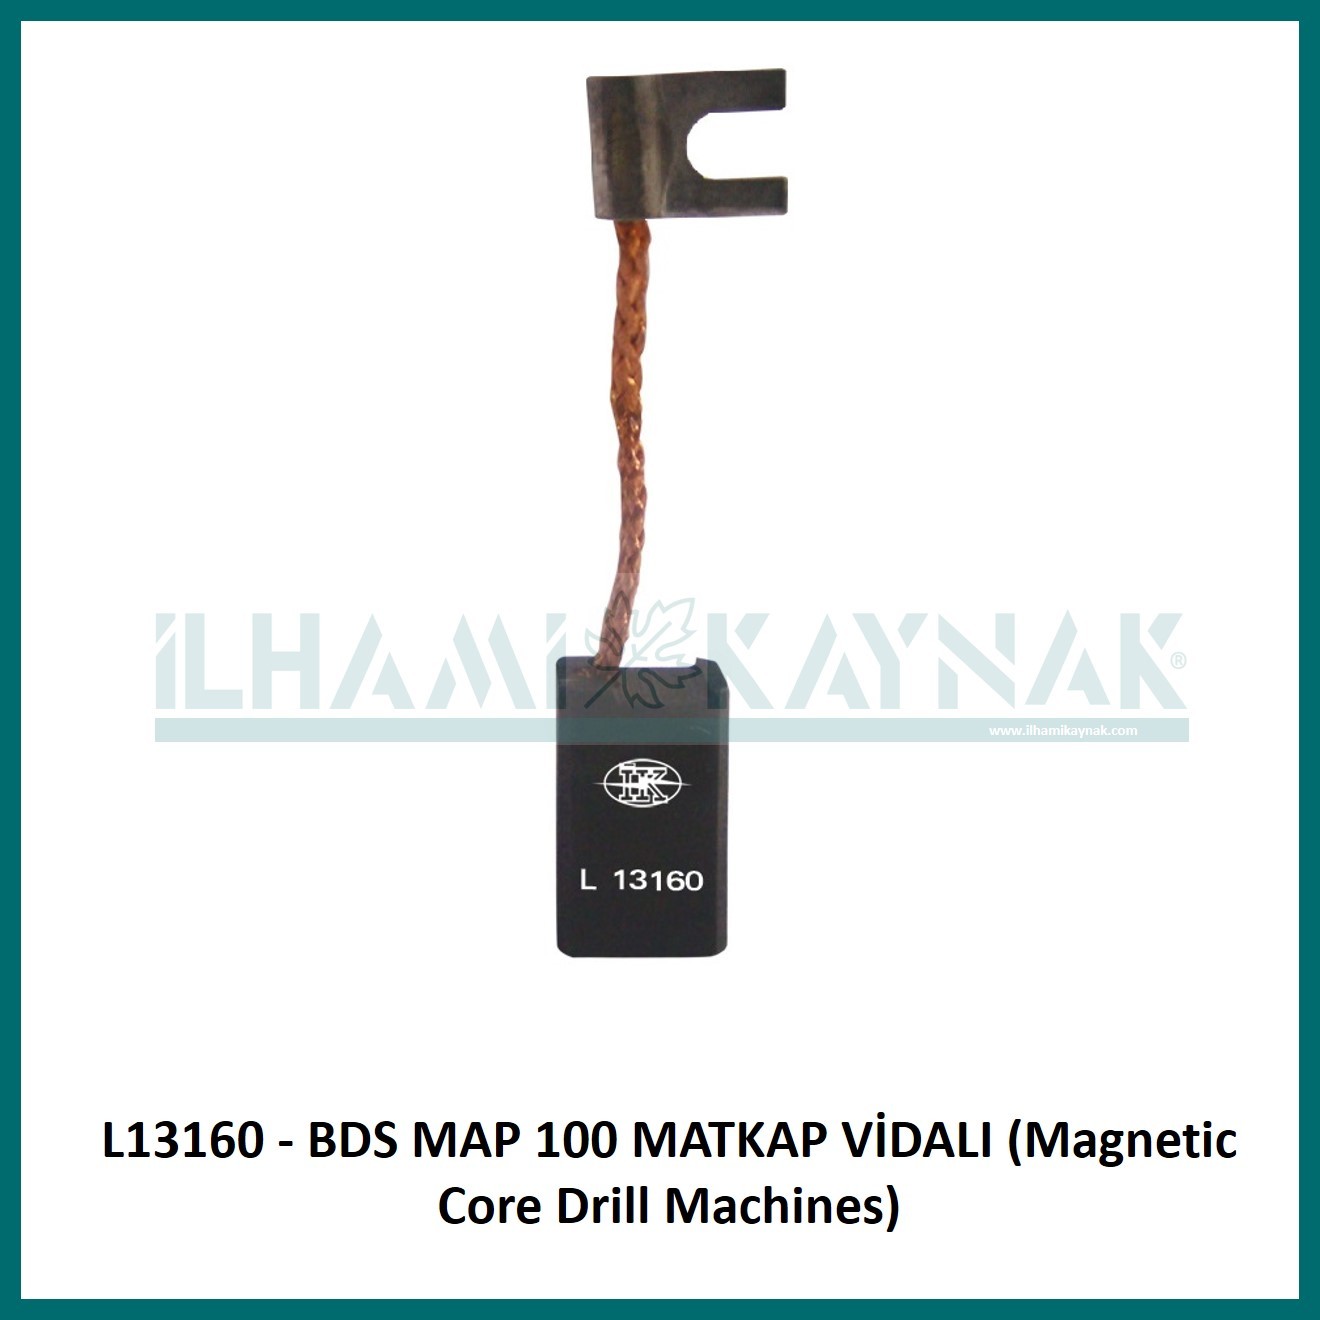 L13160 - BDS MAP 100 MATKAP VİDALI (Magnetic Core Drill Machines) - 6.2*10*18 mm - Minimum Satın Alım: 10 Adet.